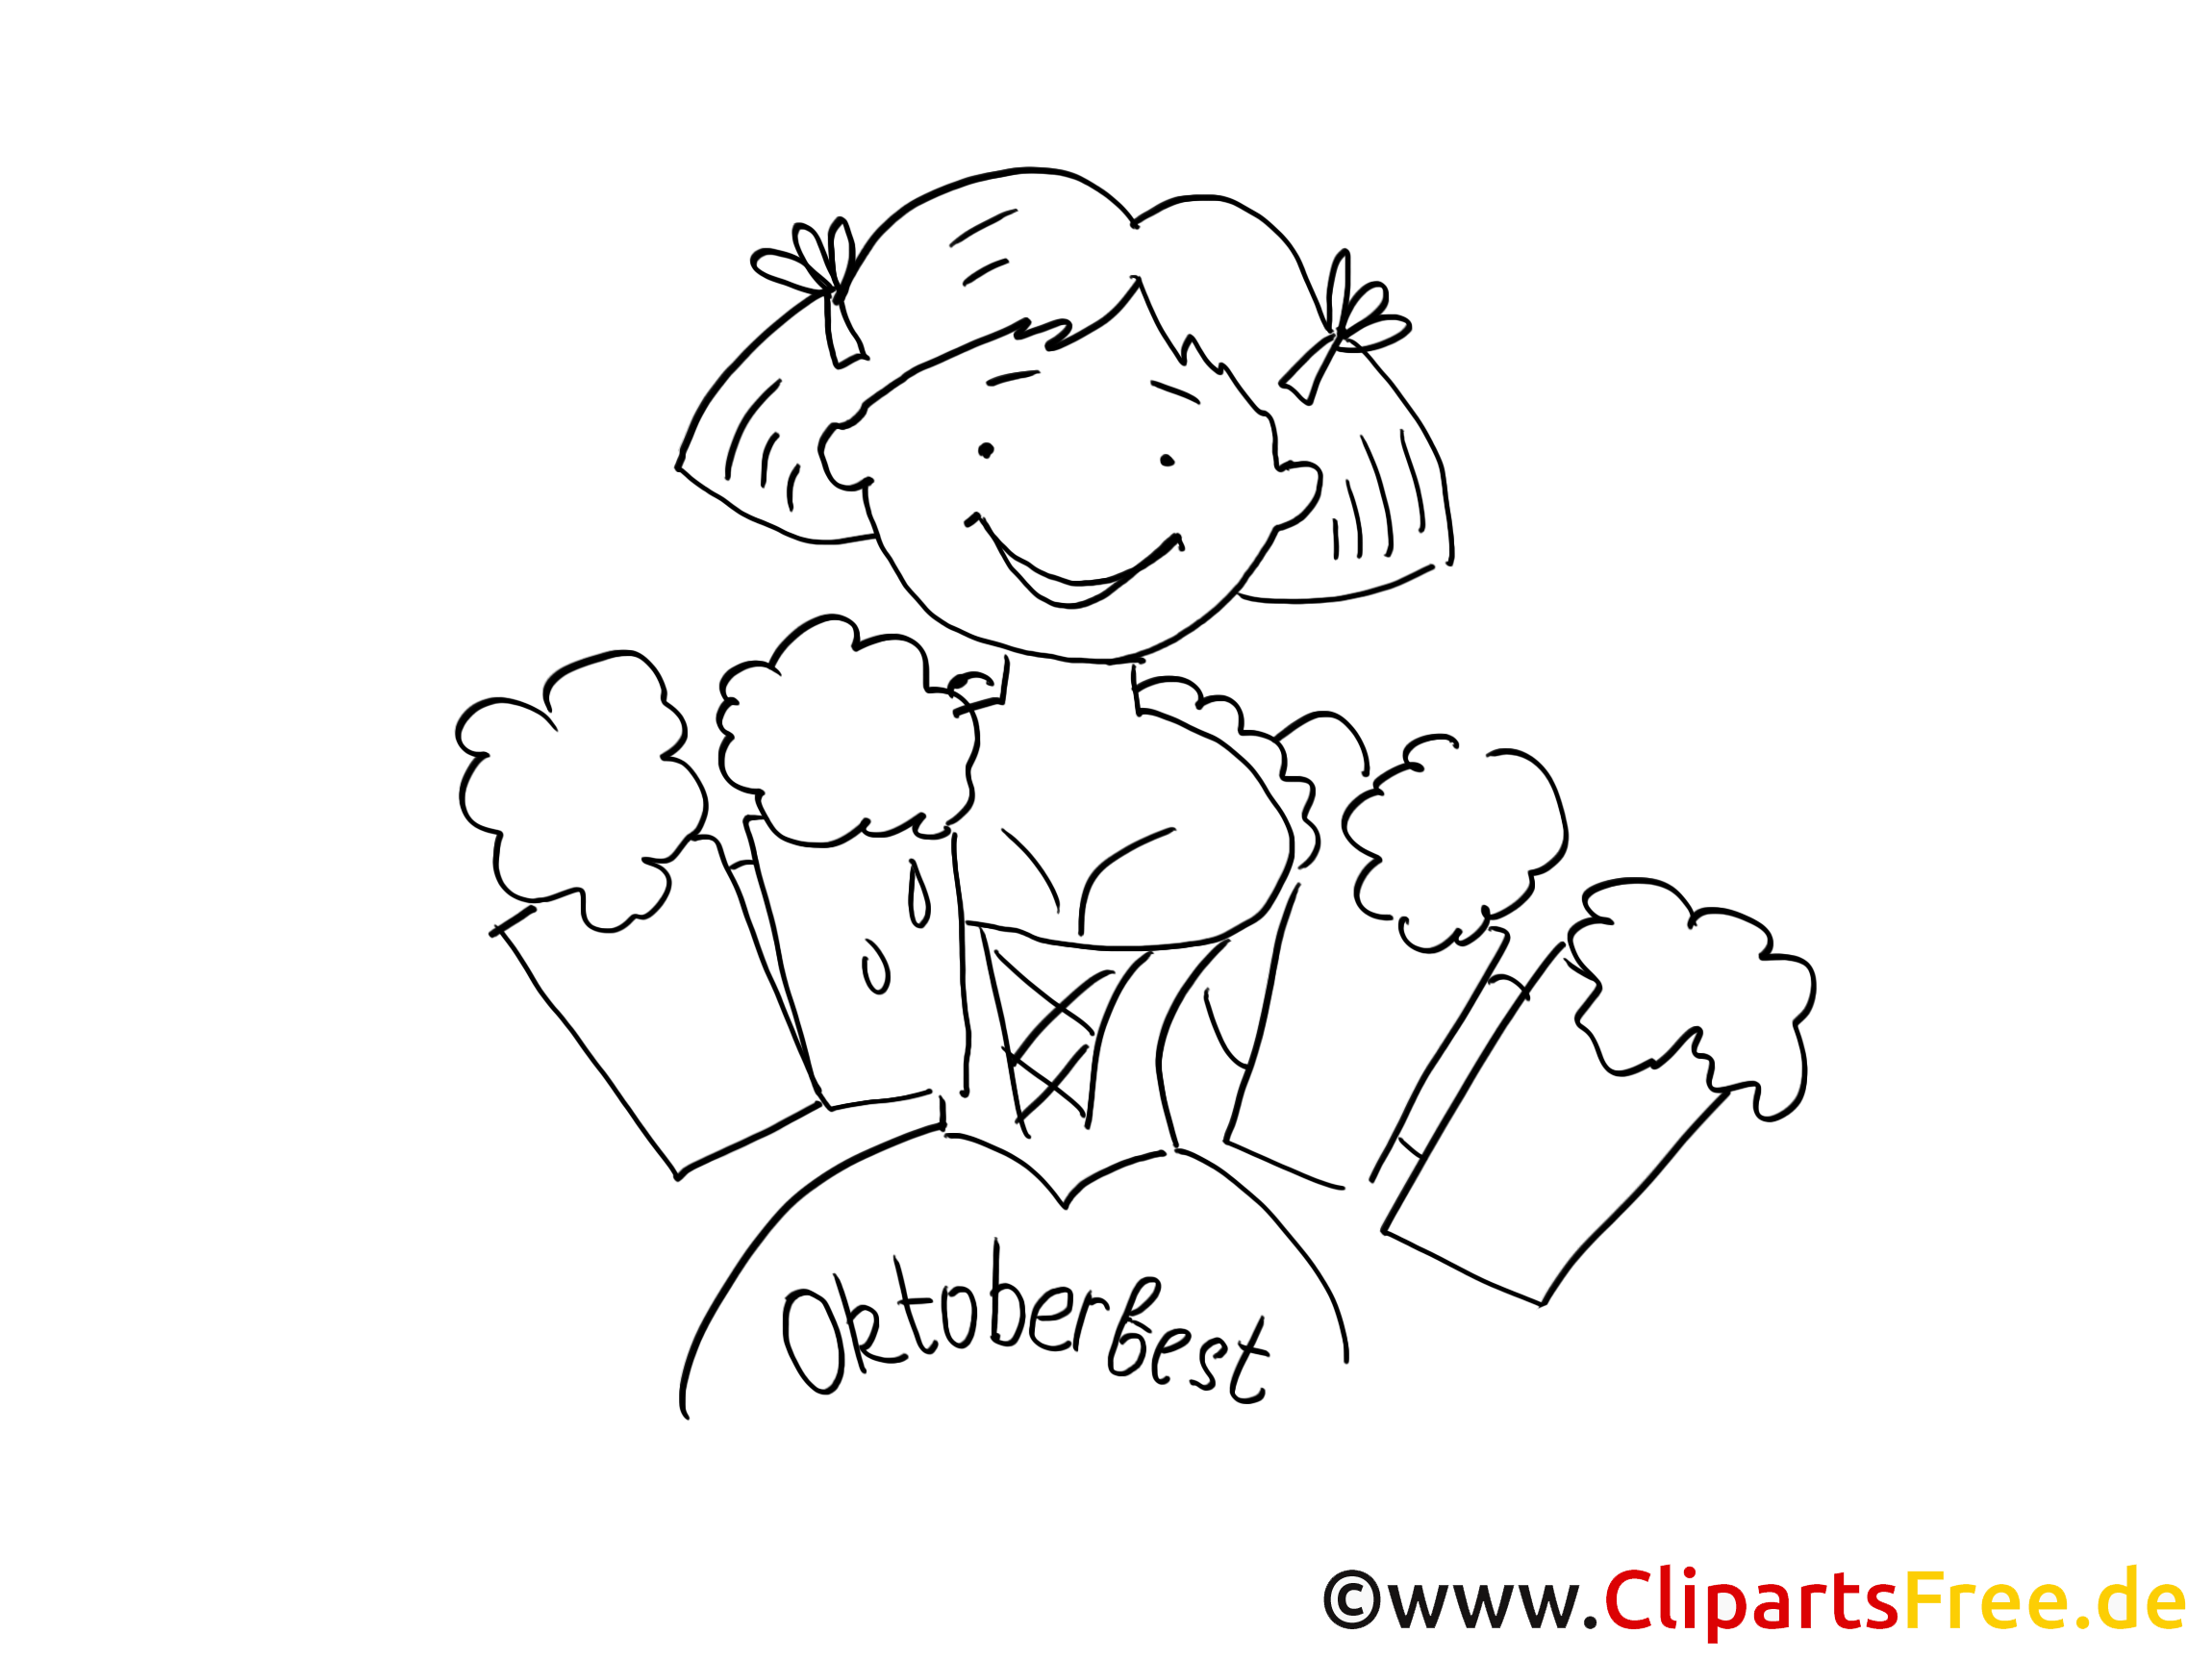 Oktoberfest clip art à colorier - Bière dessin